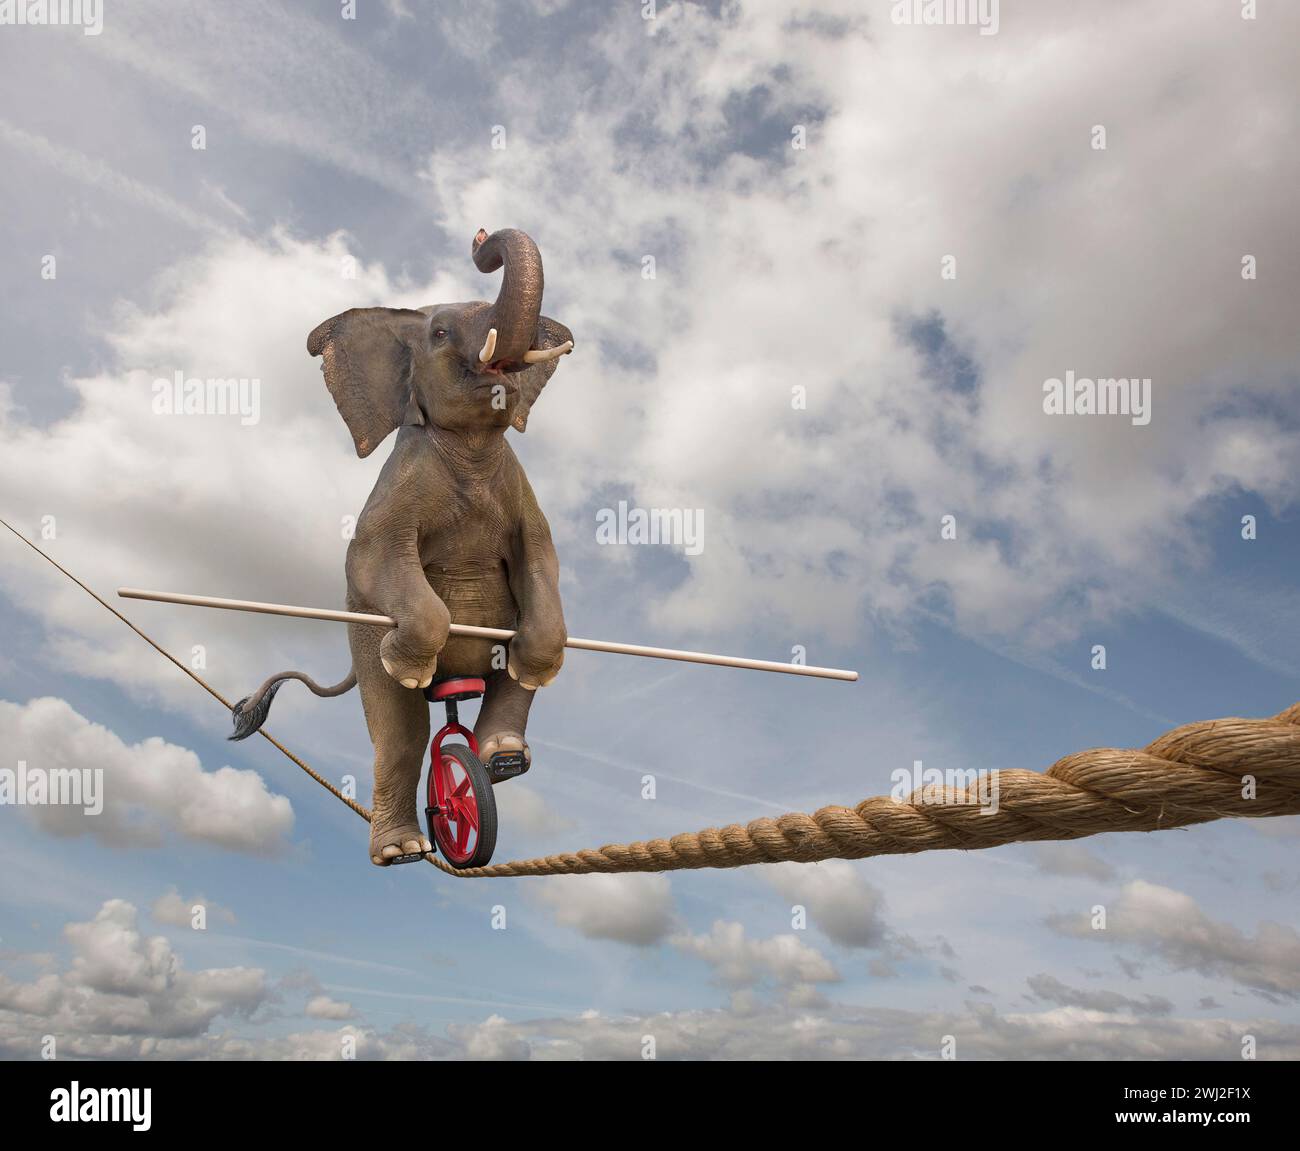 Un éléphant monte un monocycle sur une corde raide dans une image de taille, de compétence et de l'inattendu. Banque D'Images